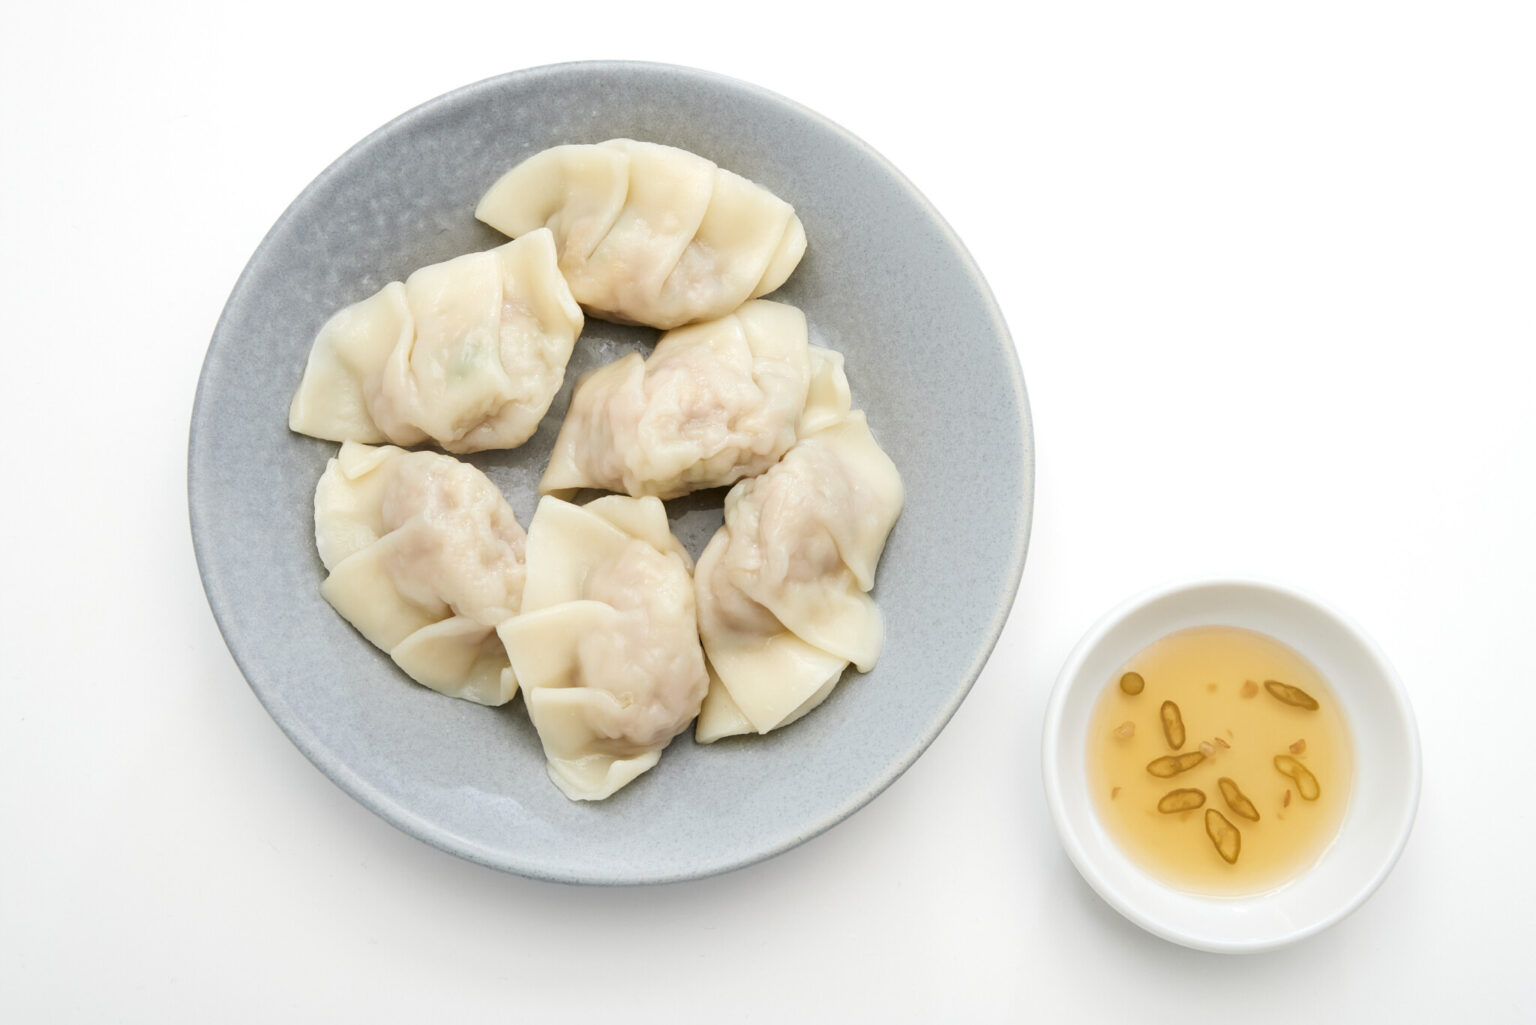 〈邦栄堂製麺〉の皮を使った自家製水餃子850円にはコブミカンの葉を練り込んでエスニックに。